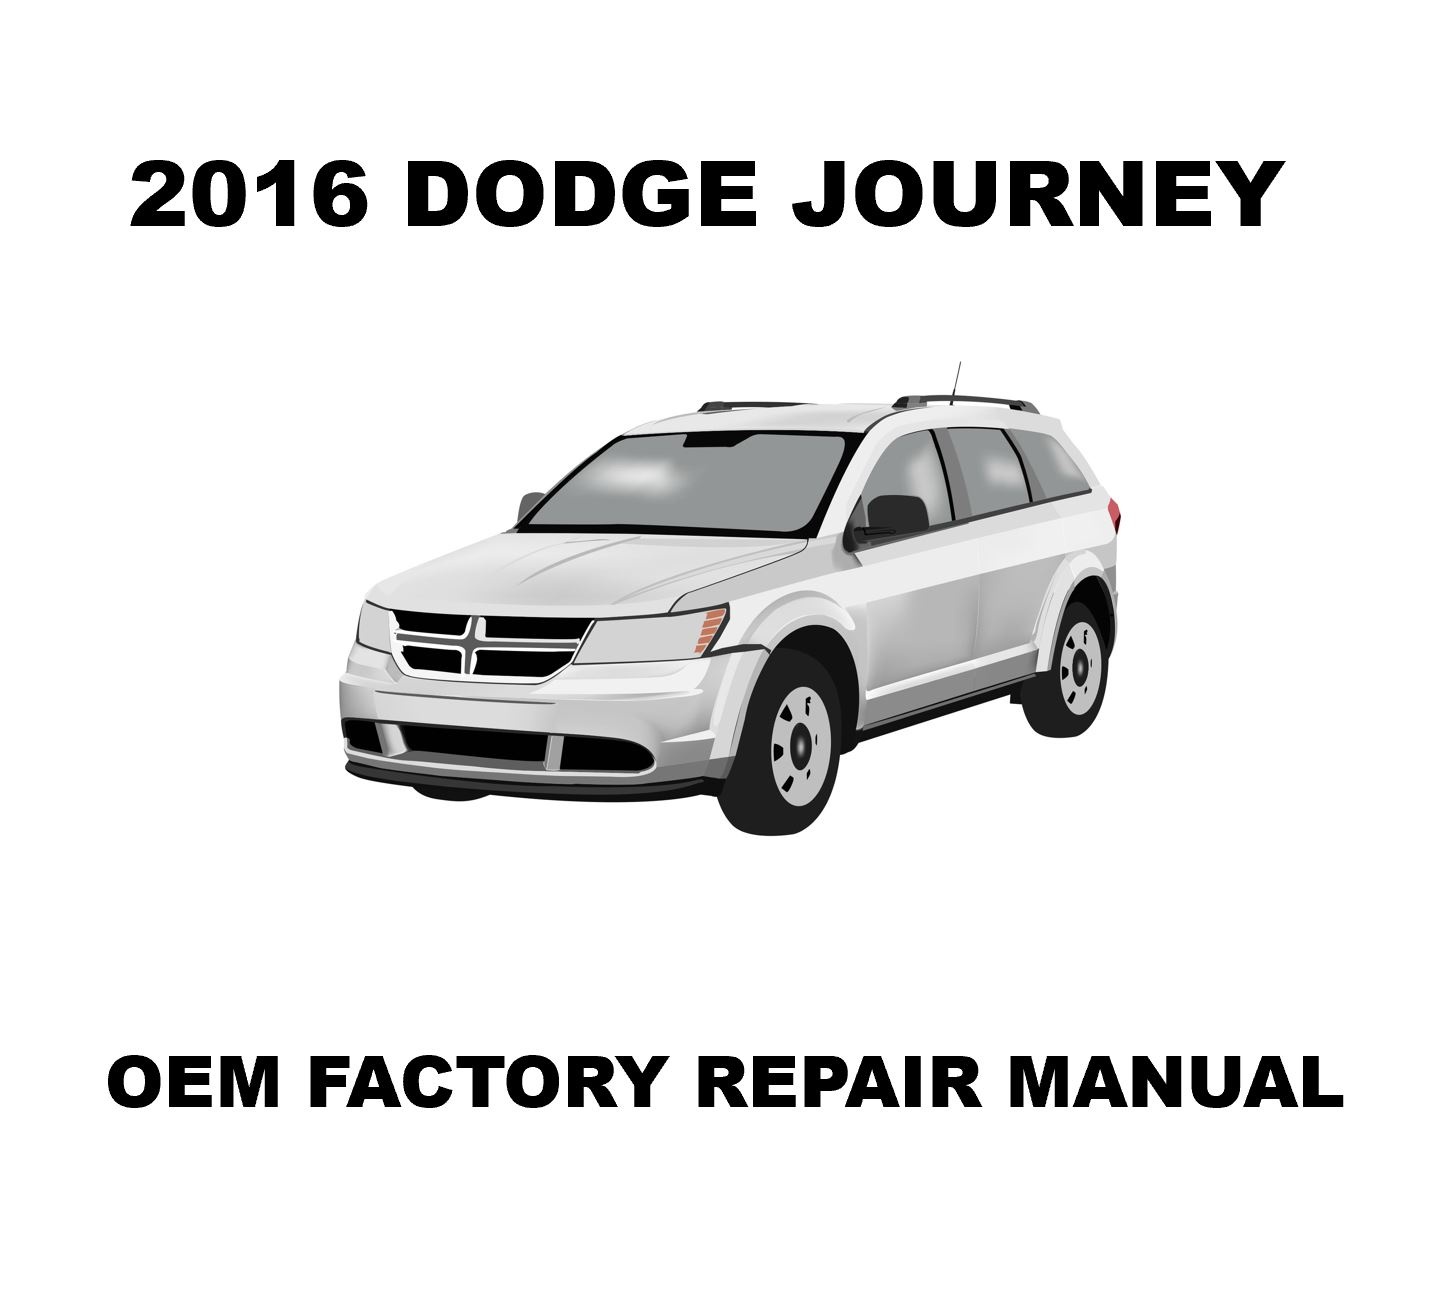 2016_dodge_journey_repair_manual_1447